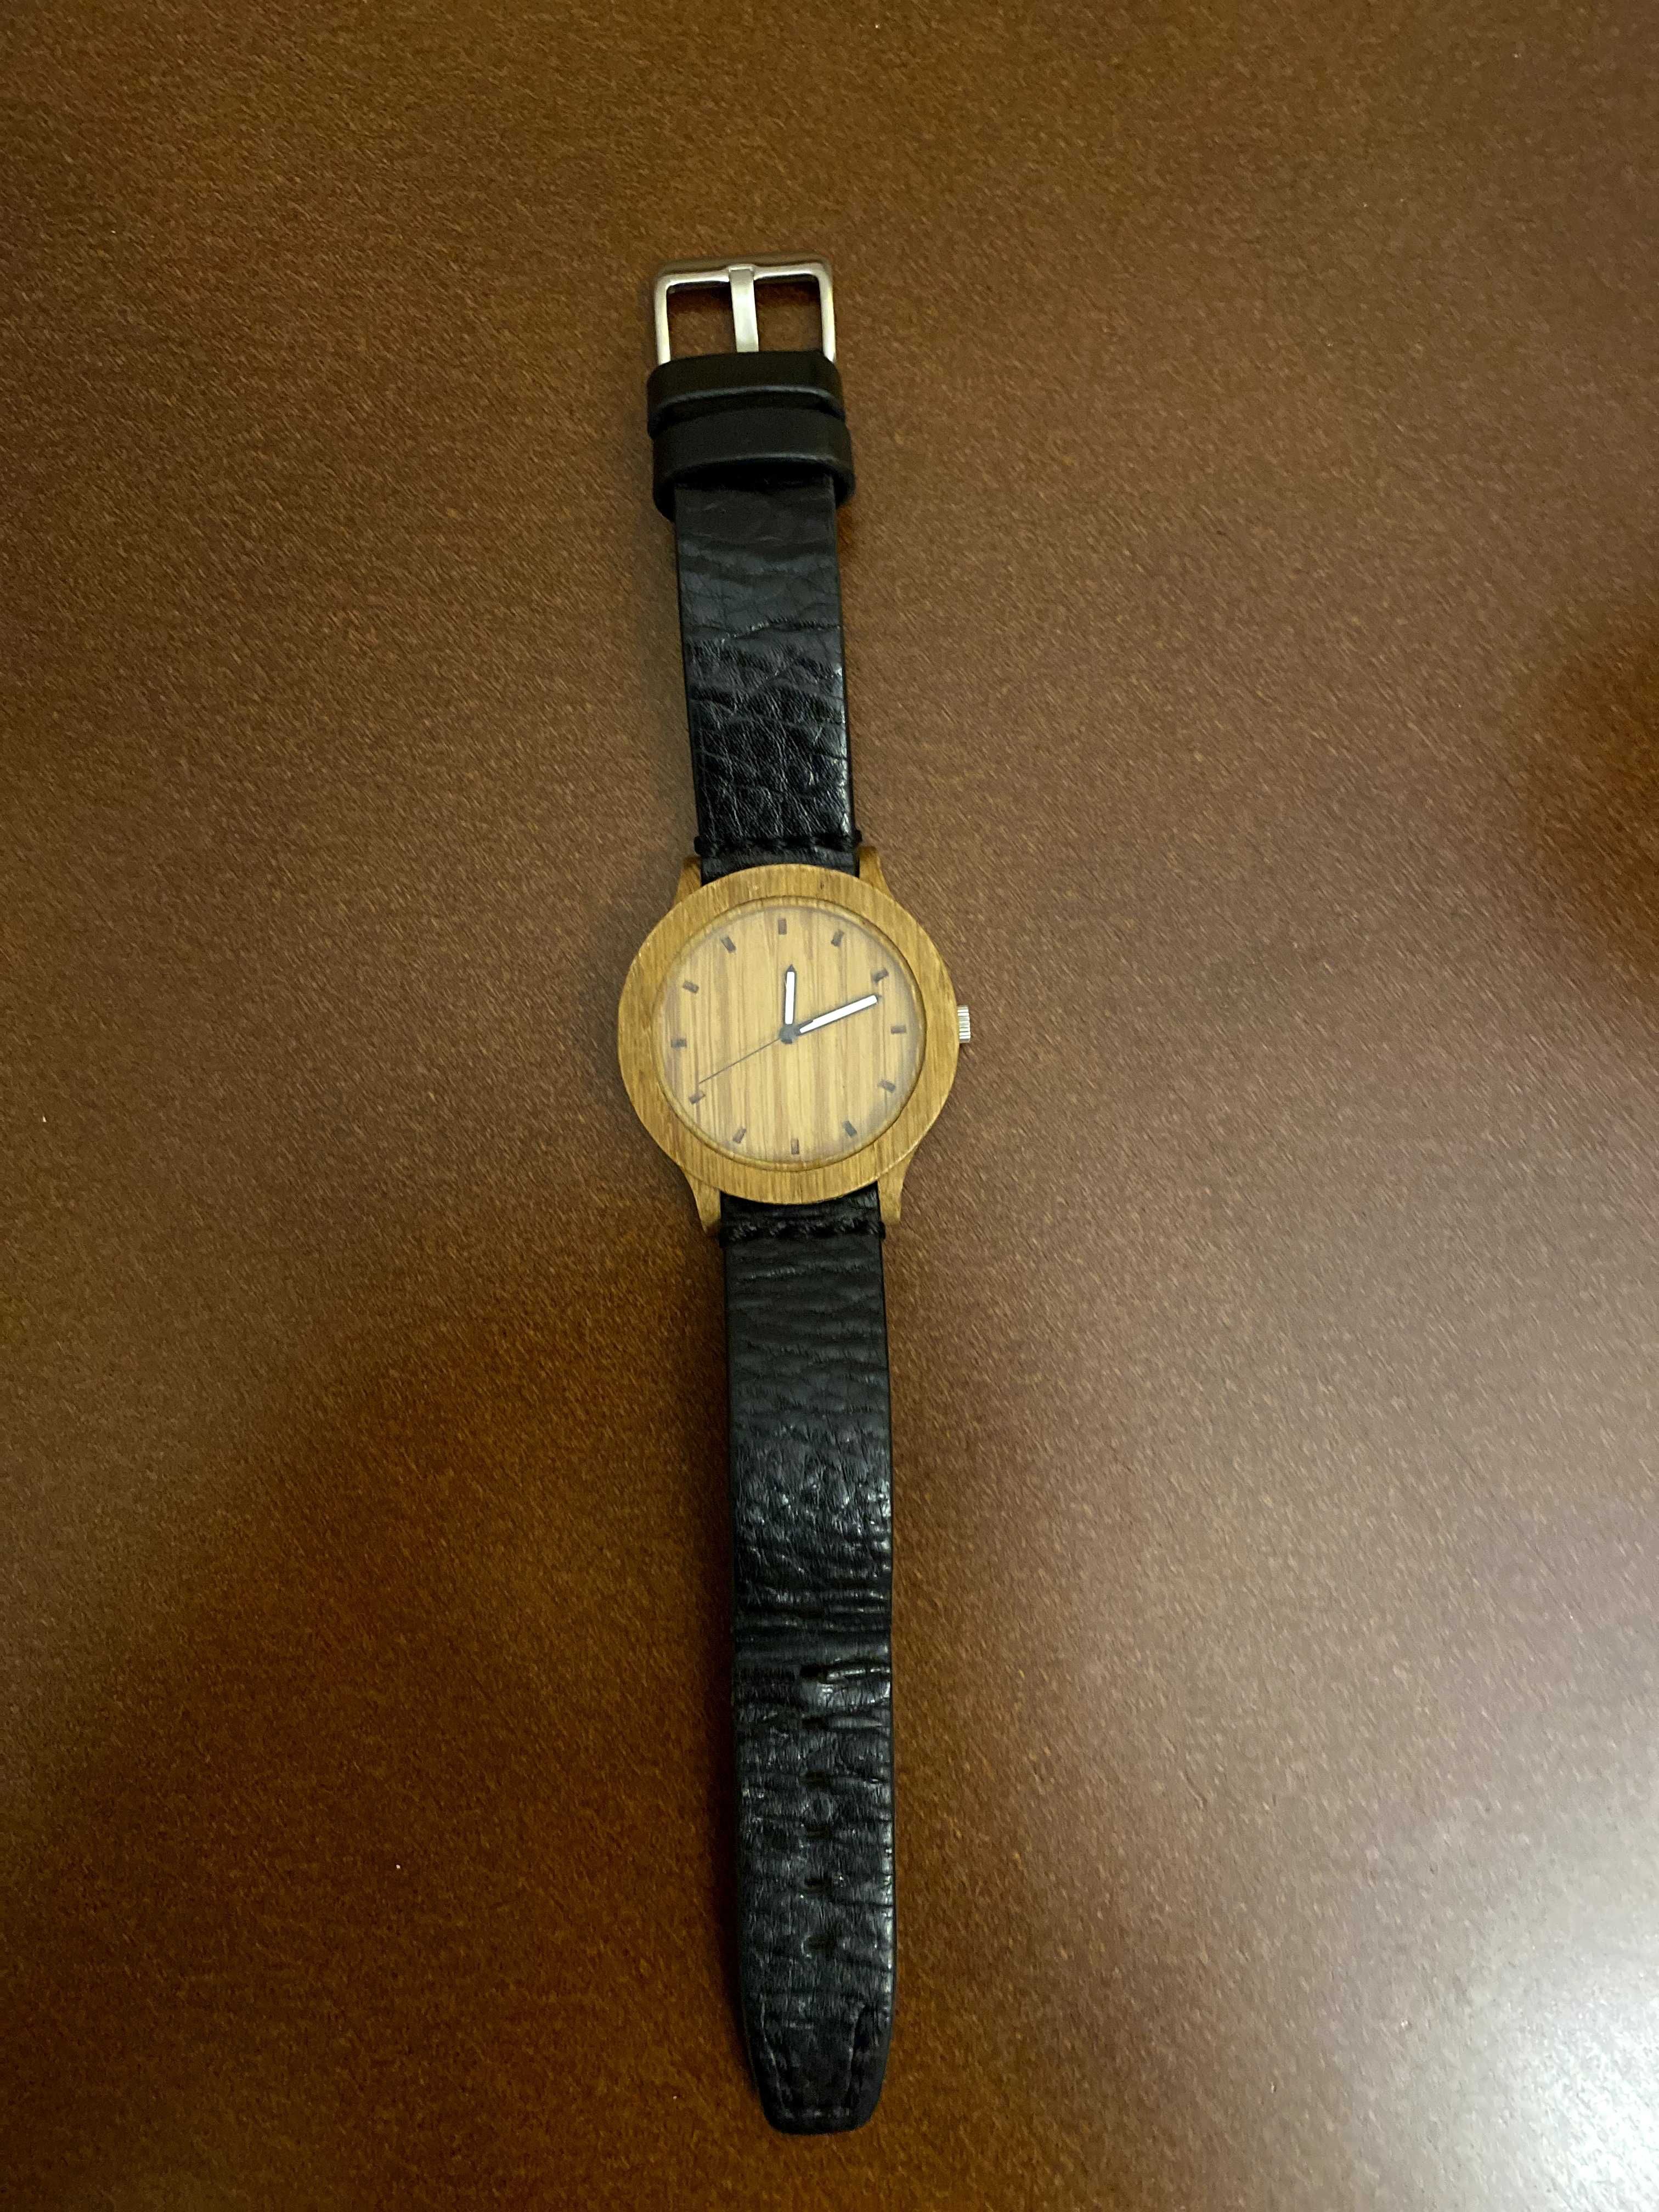 Oryginalny zegarek drewniany WOODLANS handmade in Poland